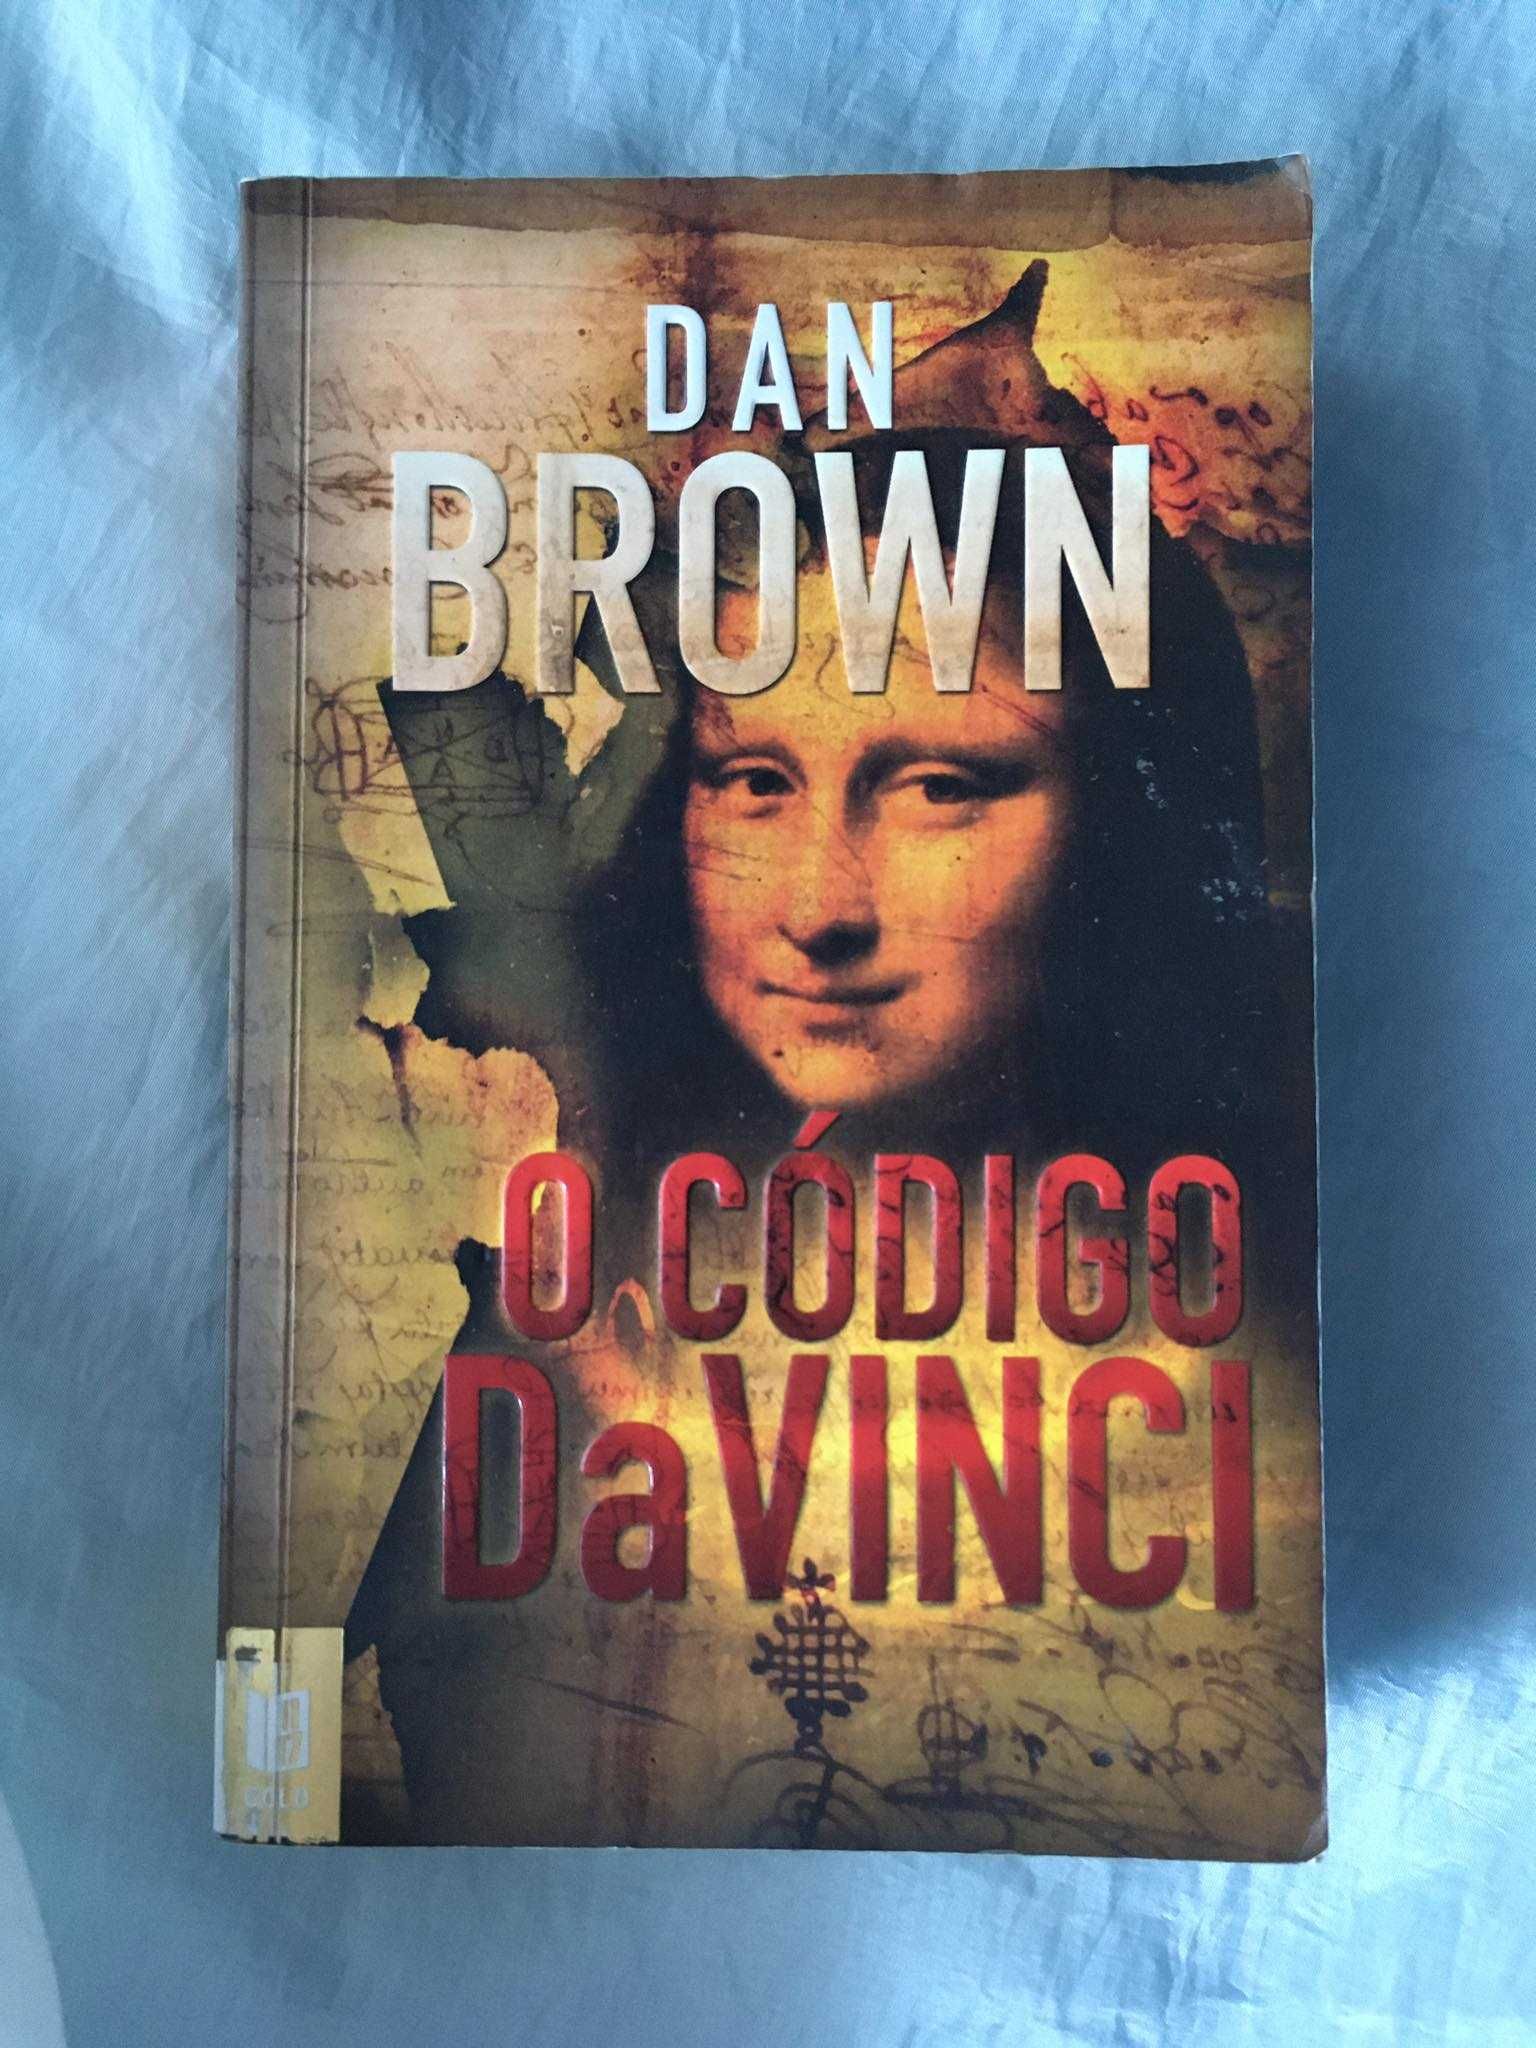 Livro "O Código Da Vinci" Dan Brown